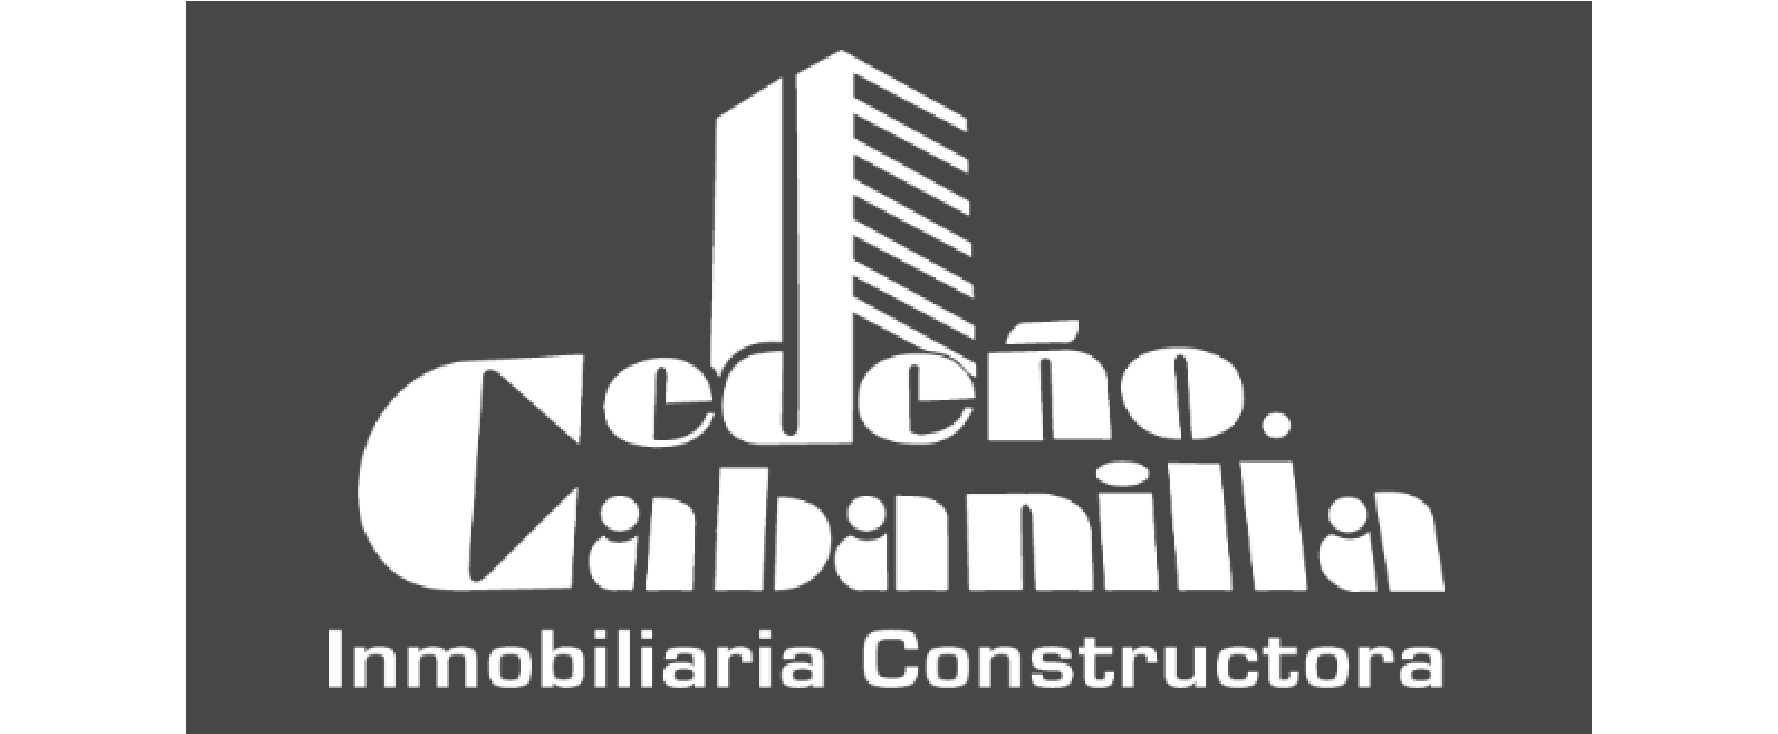 Logo inmobiliaria Cedelo Cabanilla